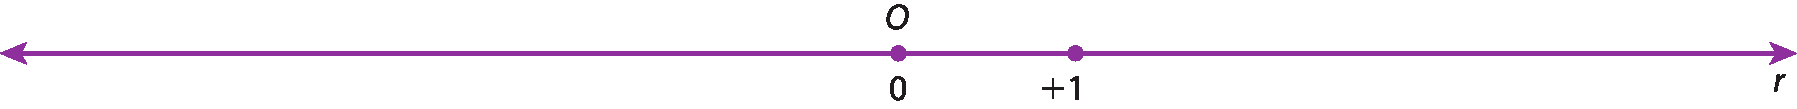 Ilustração. Reta numérica r com o ponto O associado ao número zero no centro. À direita do ponto O, um ponto associado ao número mais 1.